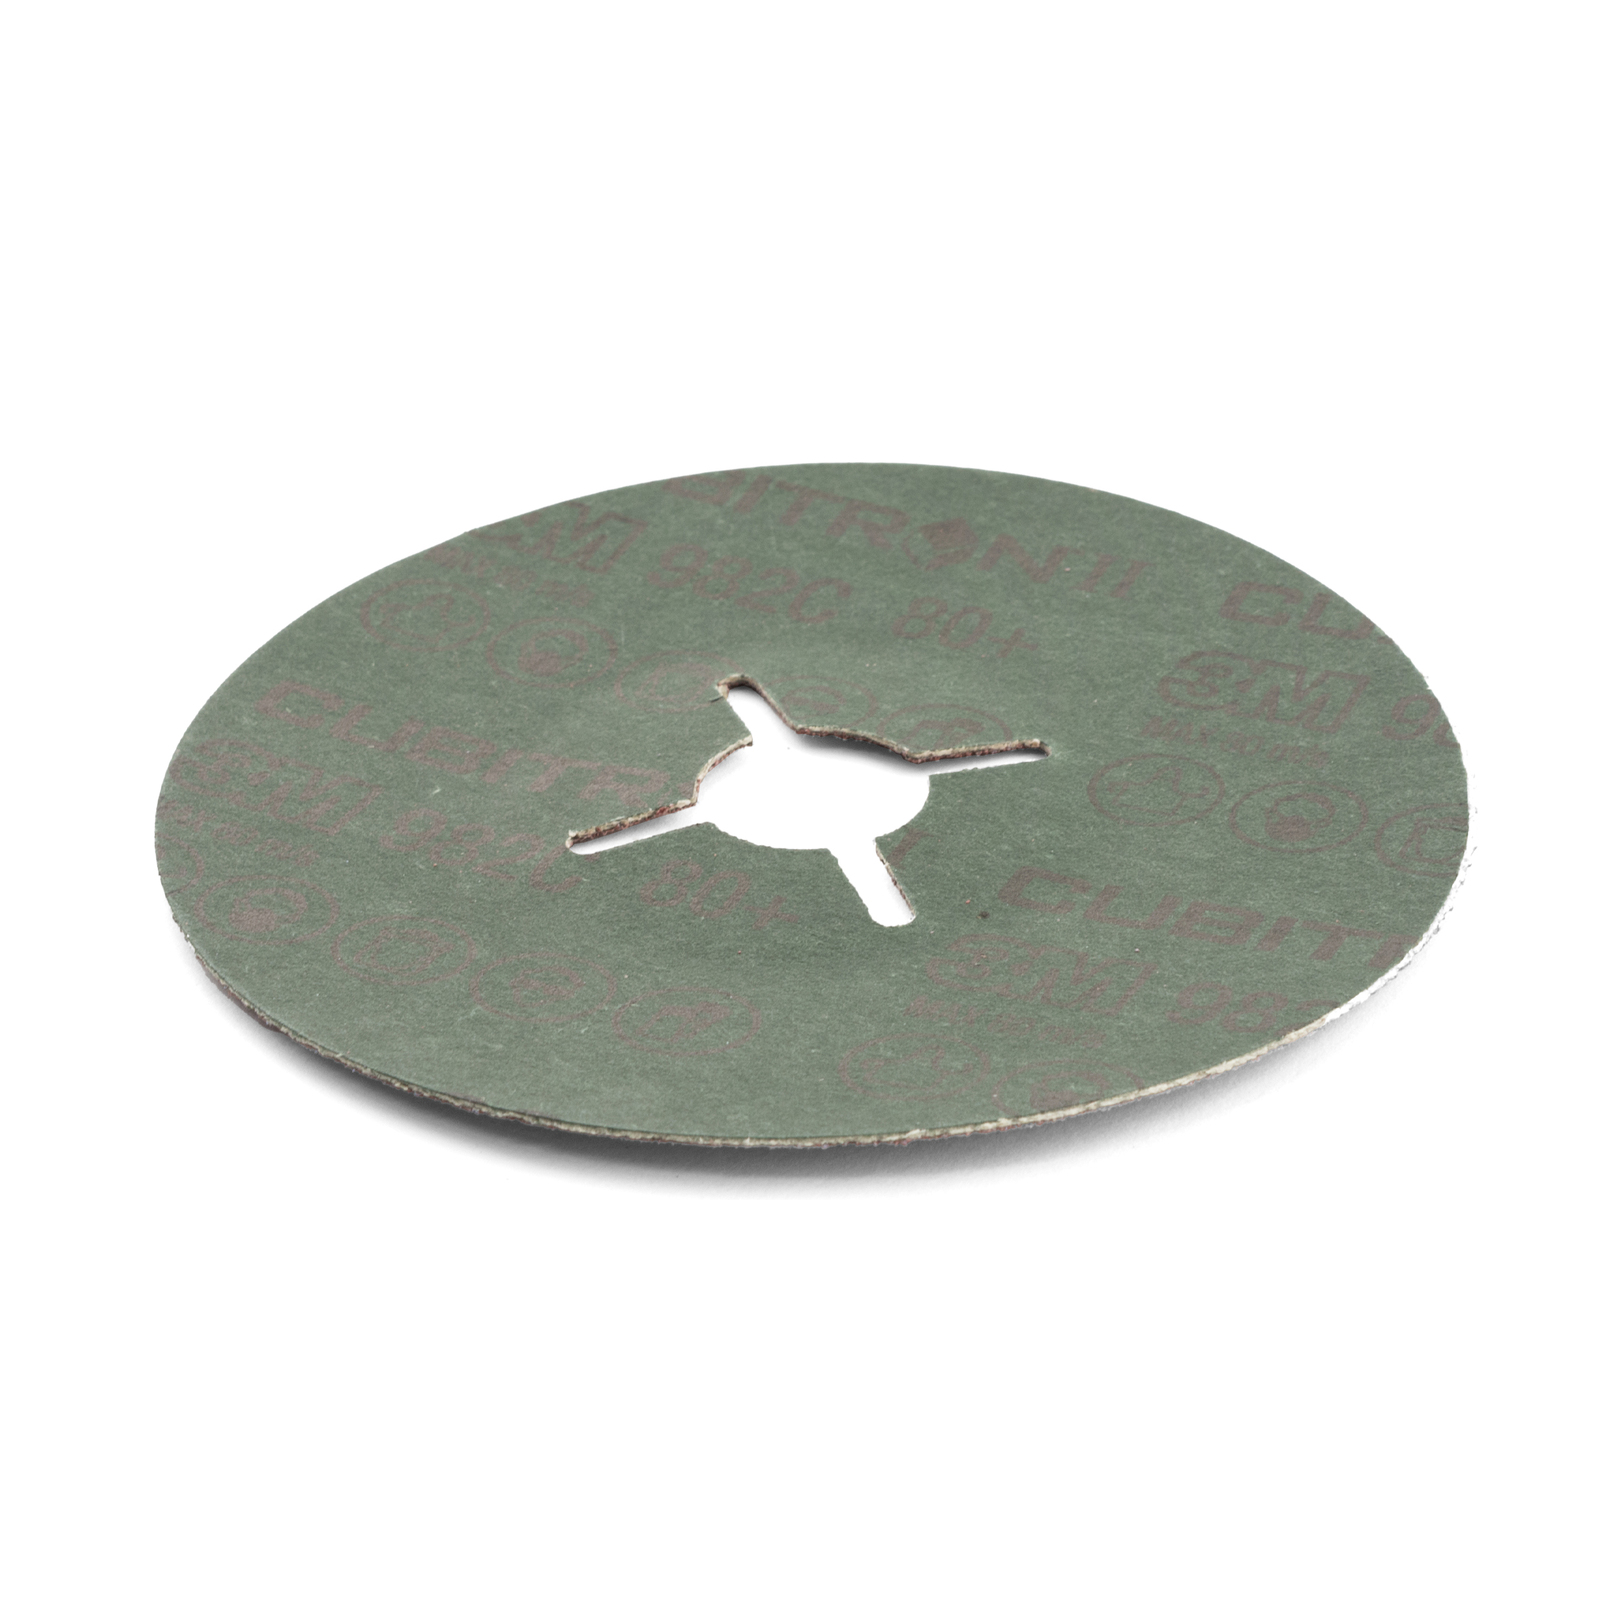 89720, 3M 782C Ceramic Sanding Disc, 180mm, Medium Grade, P60 Grit, 25 in  pack